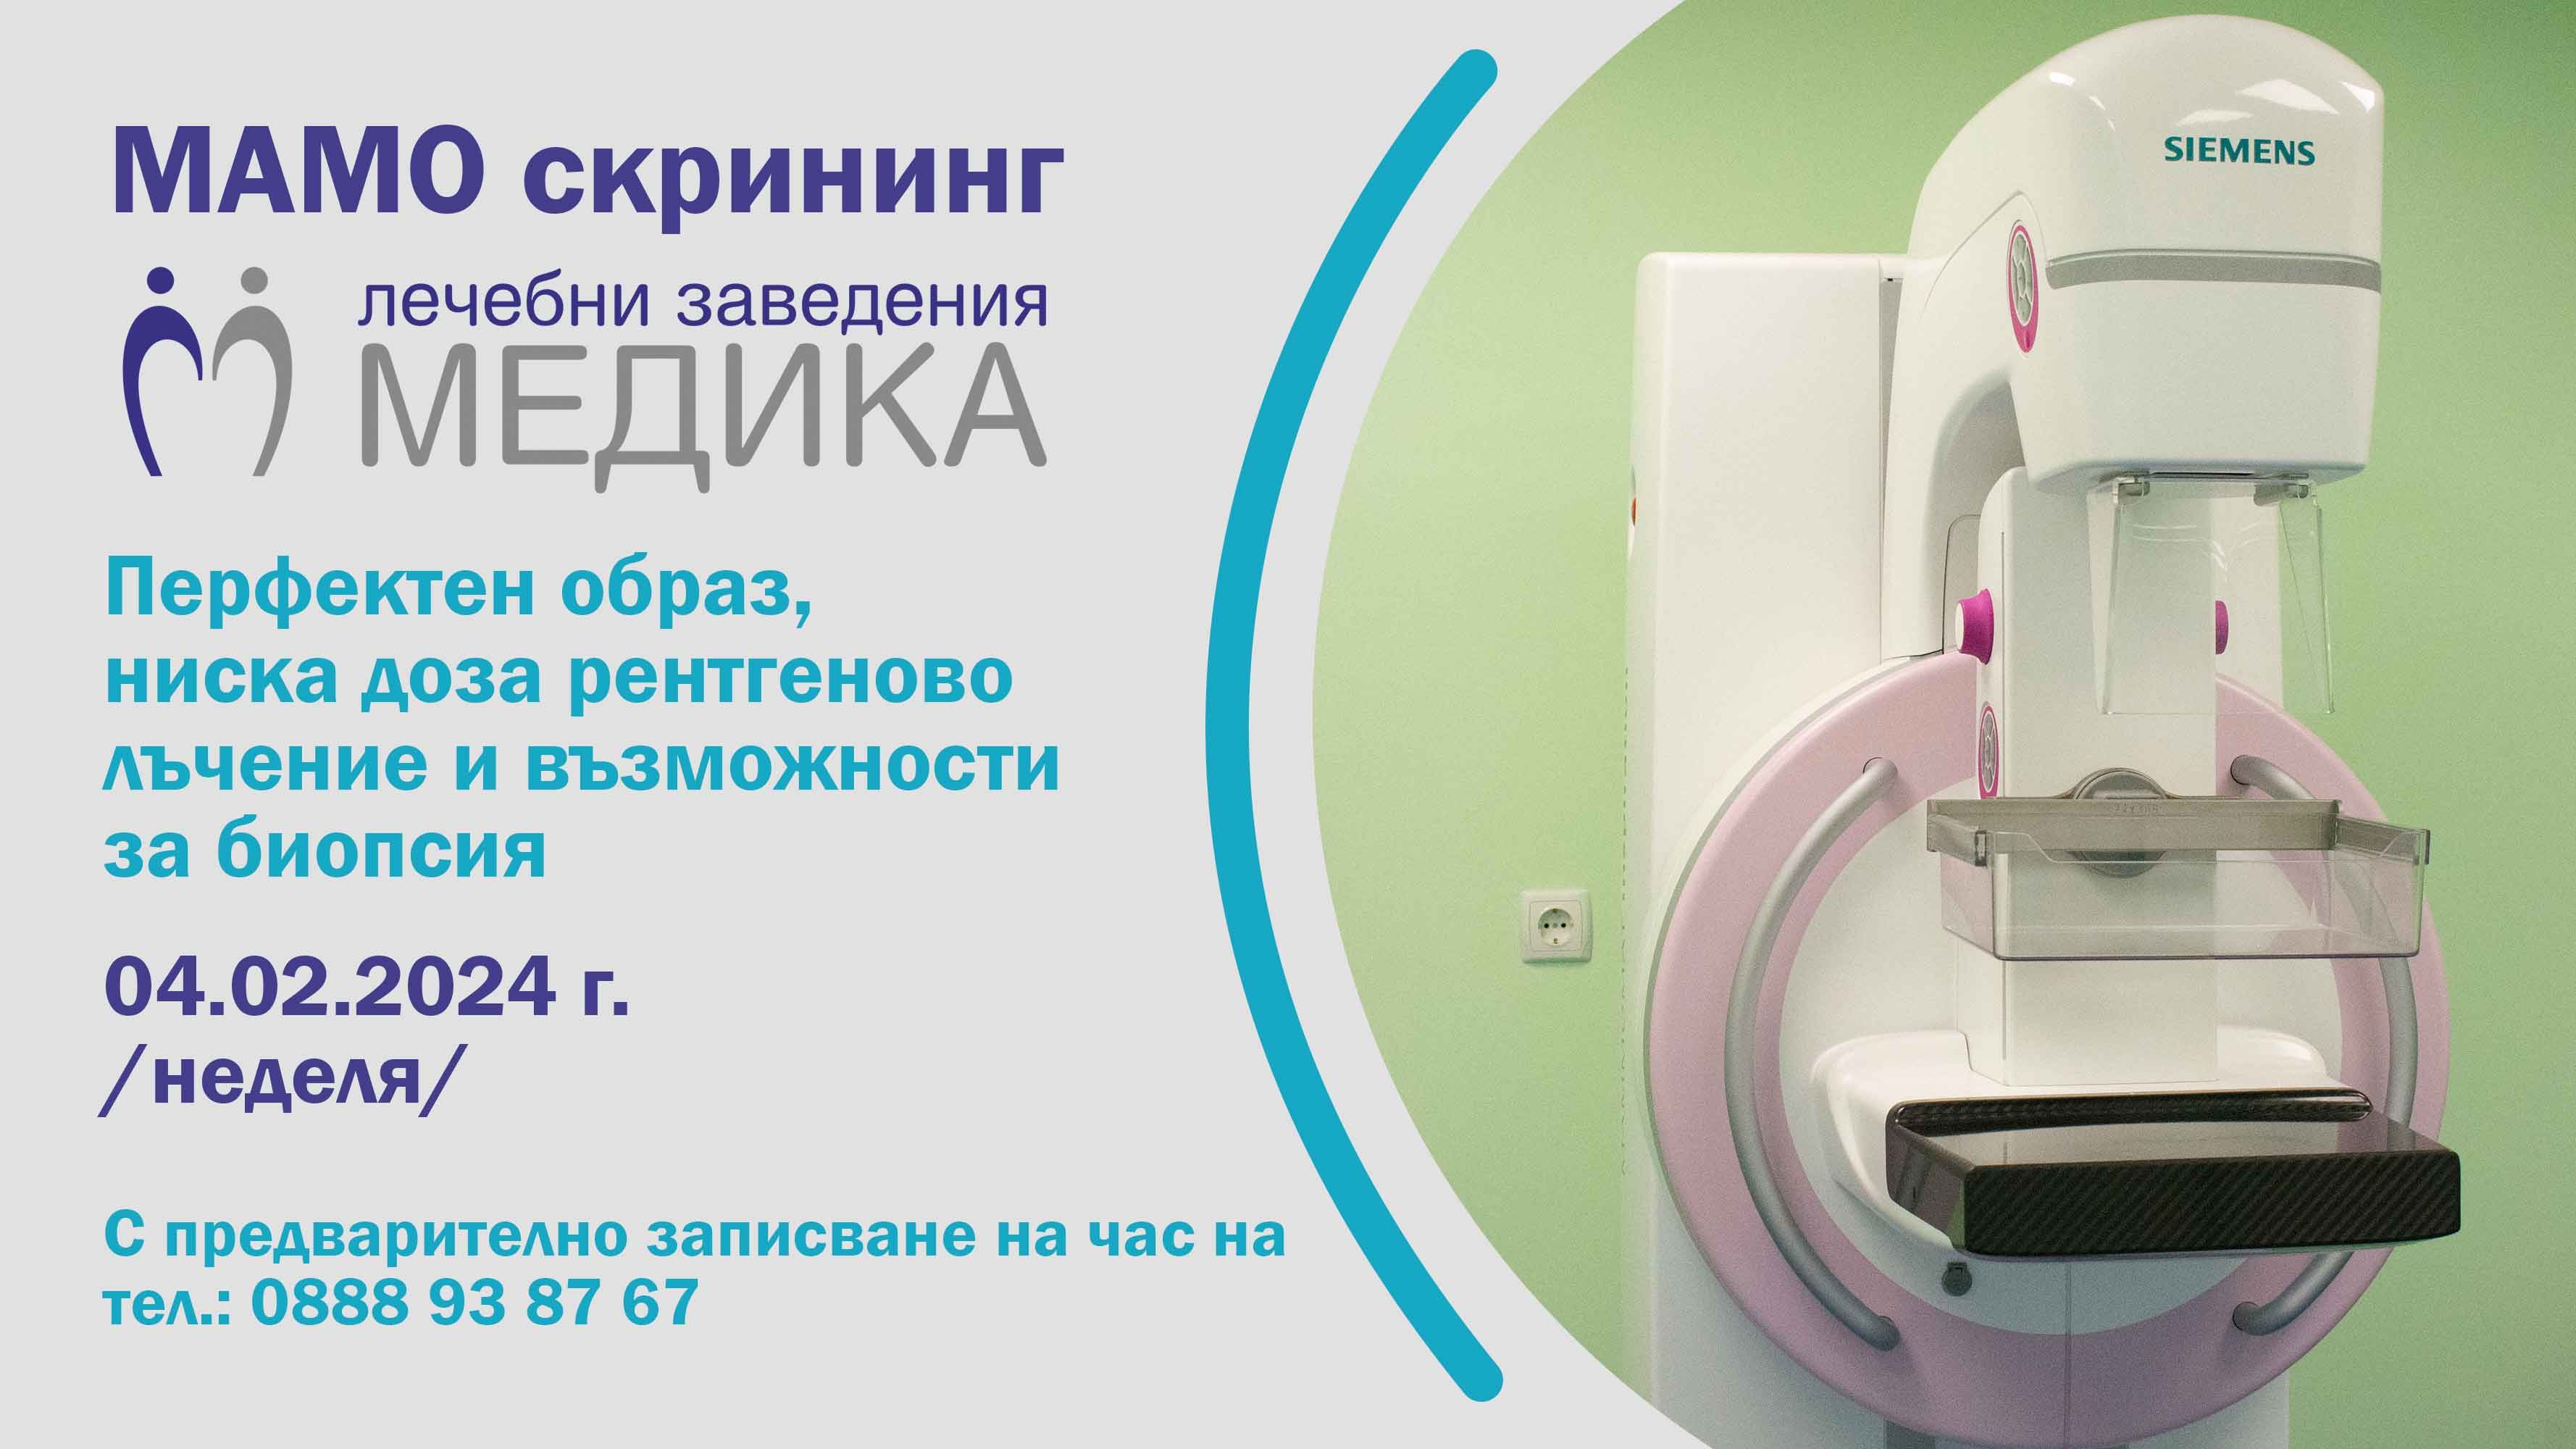 МЕДИКА с безплатни мамографии на Световния ден за борба с рака